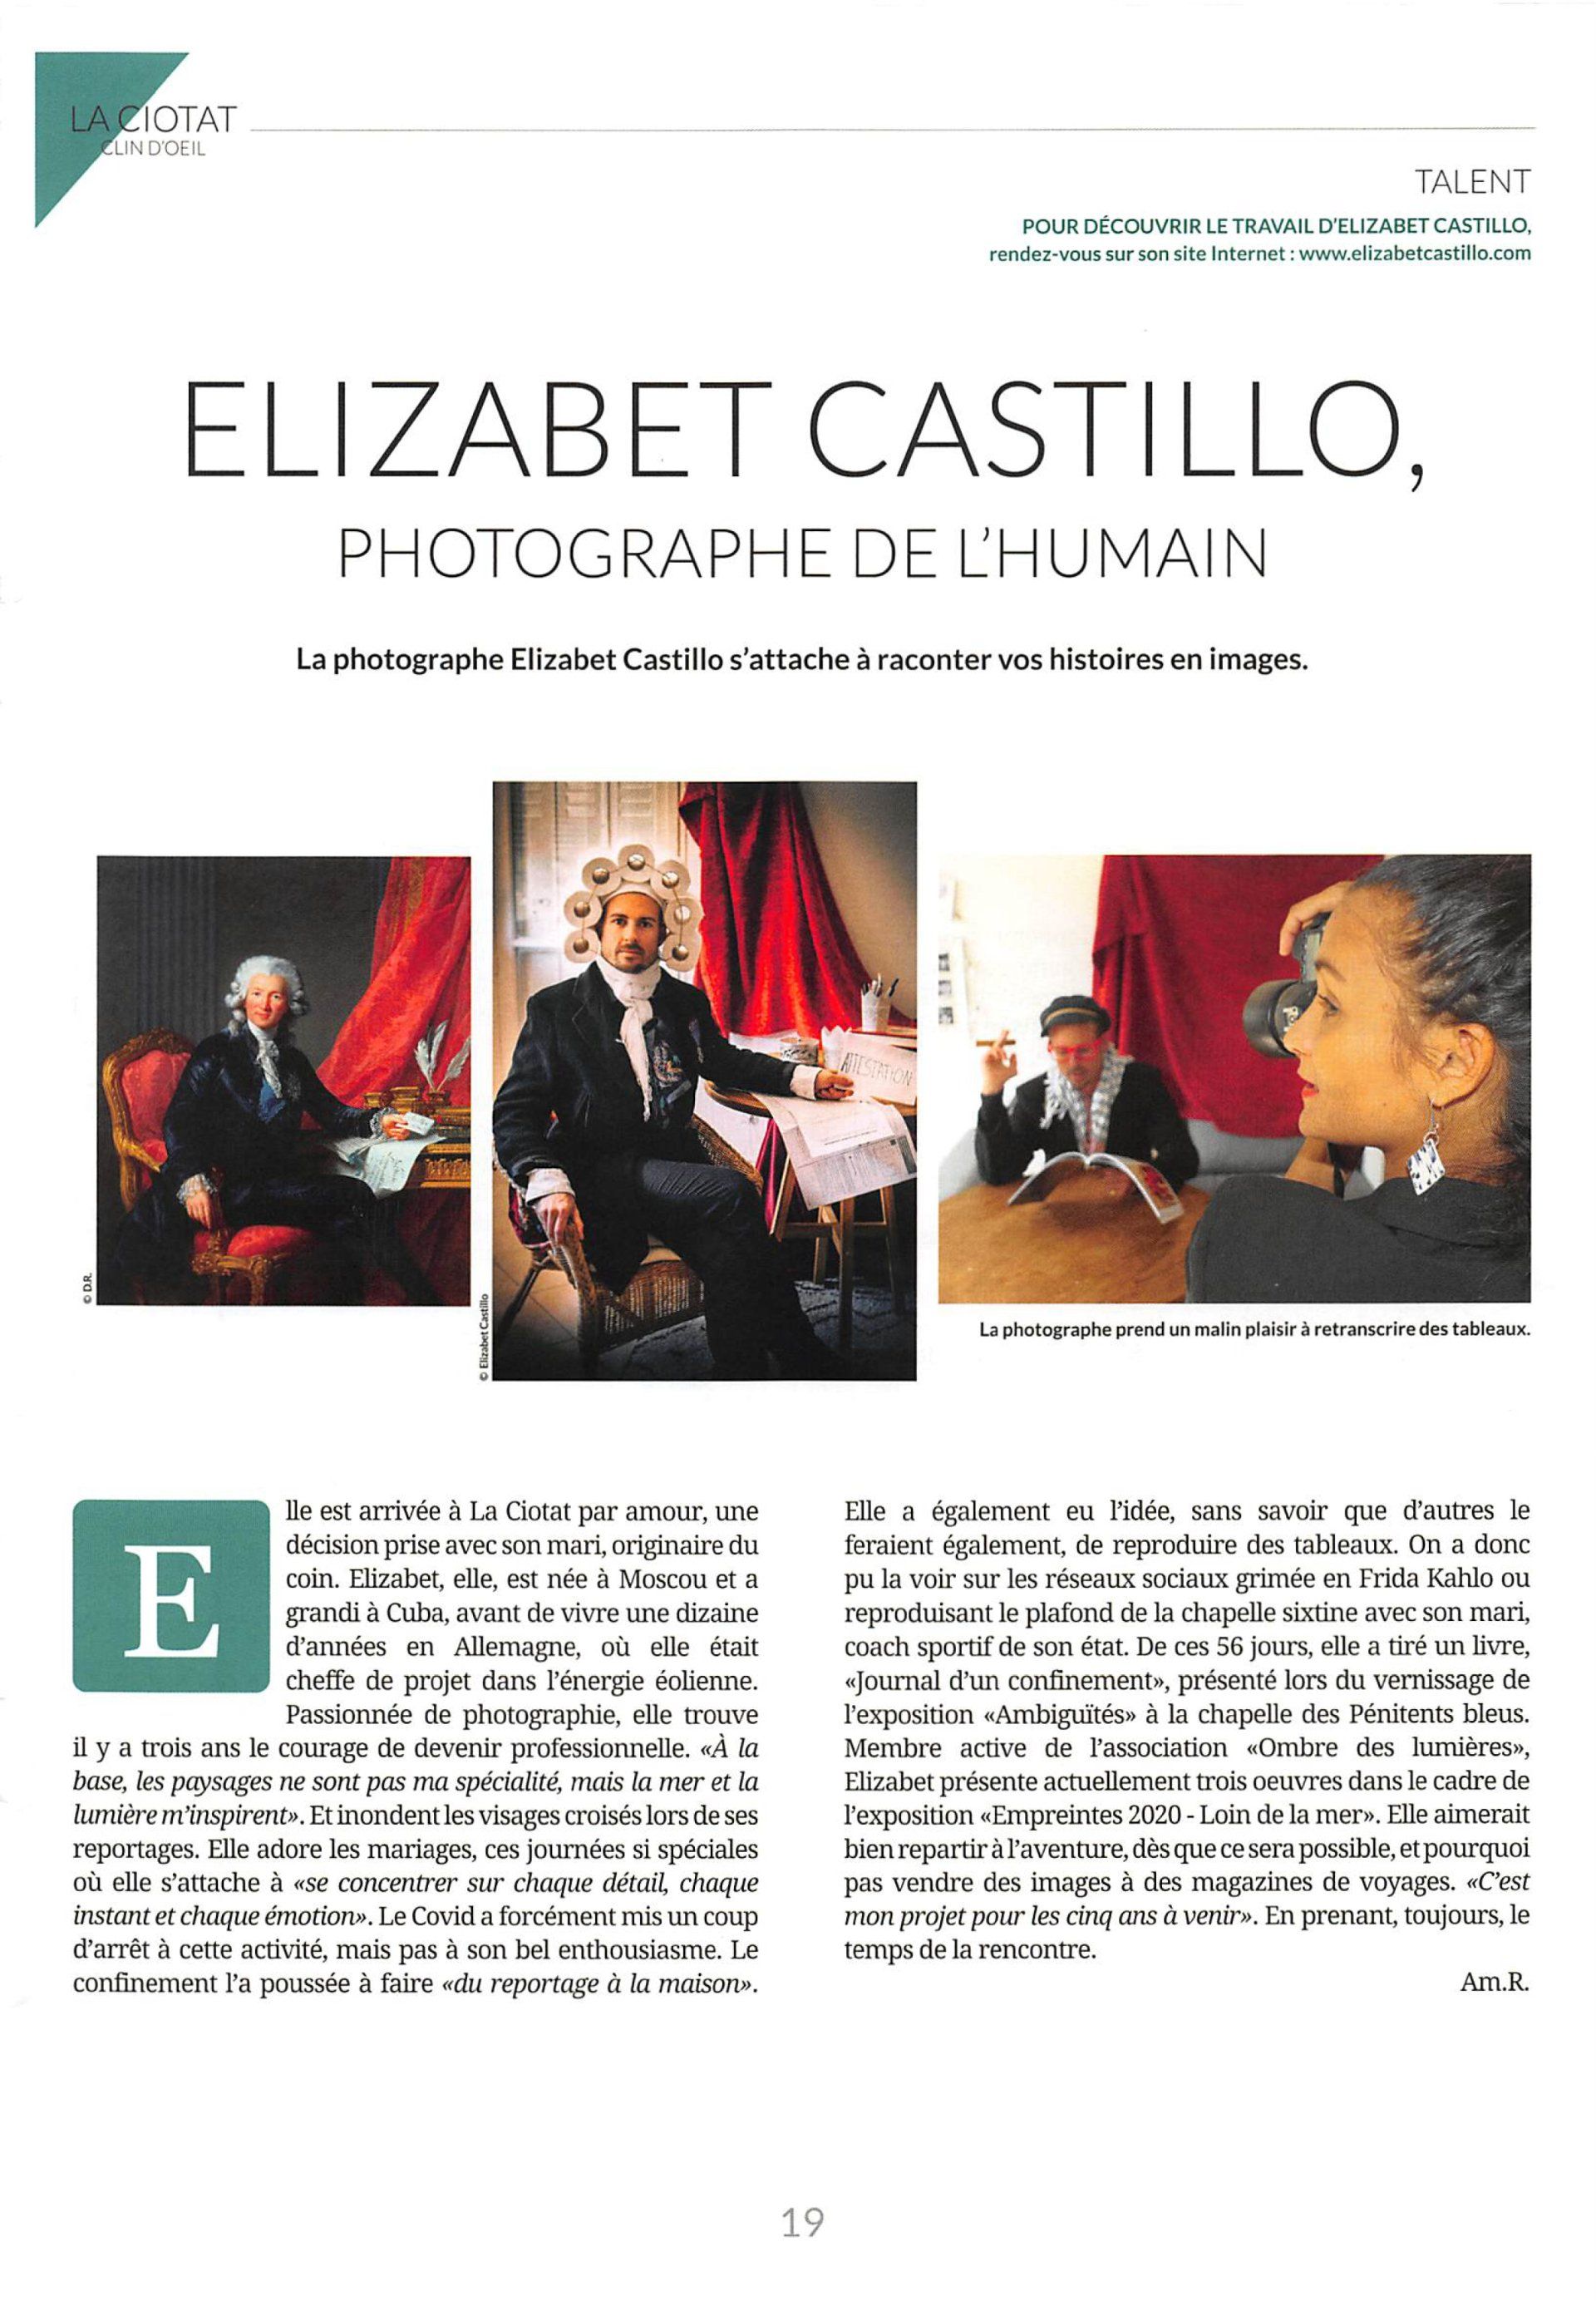 Extrait de presse sur Journal d'un Confinement de Elizabet Castillo, Magazin La Ciotat